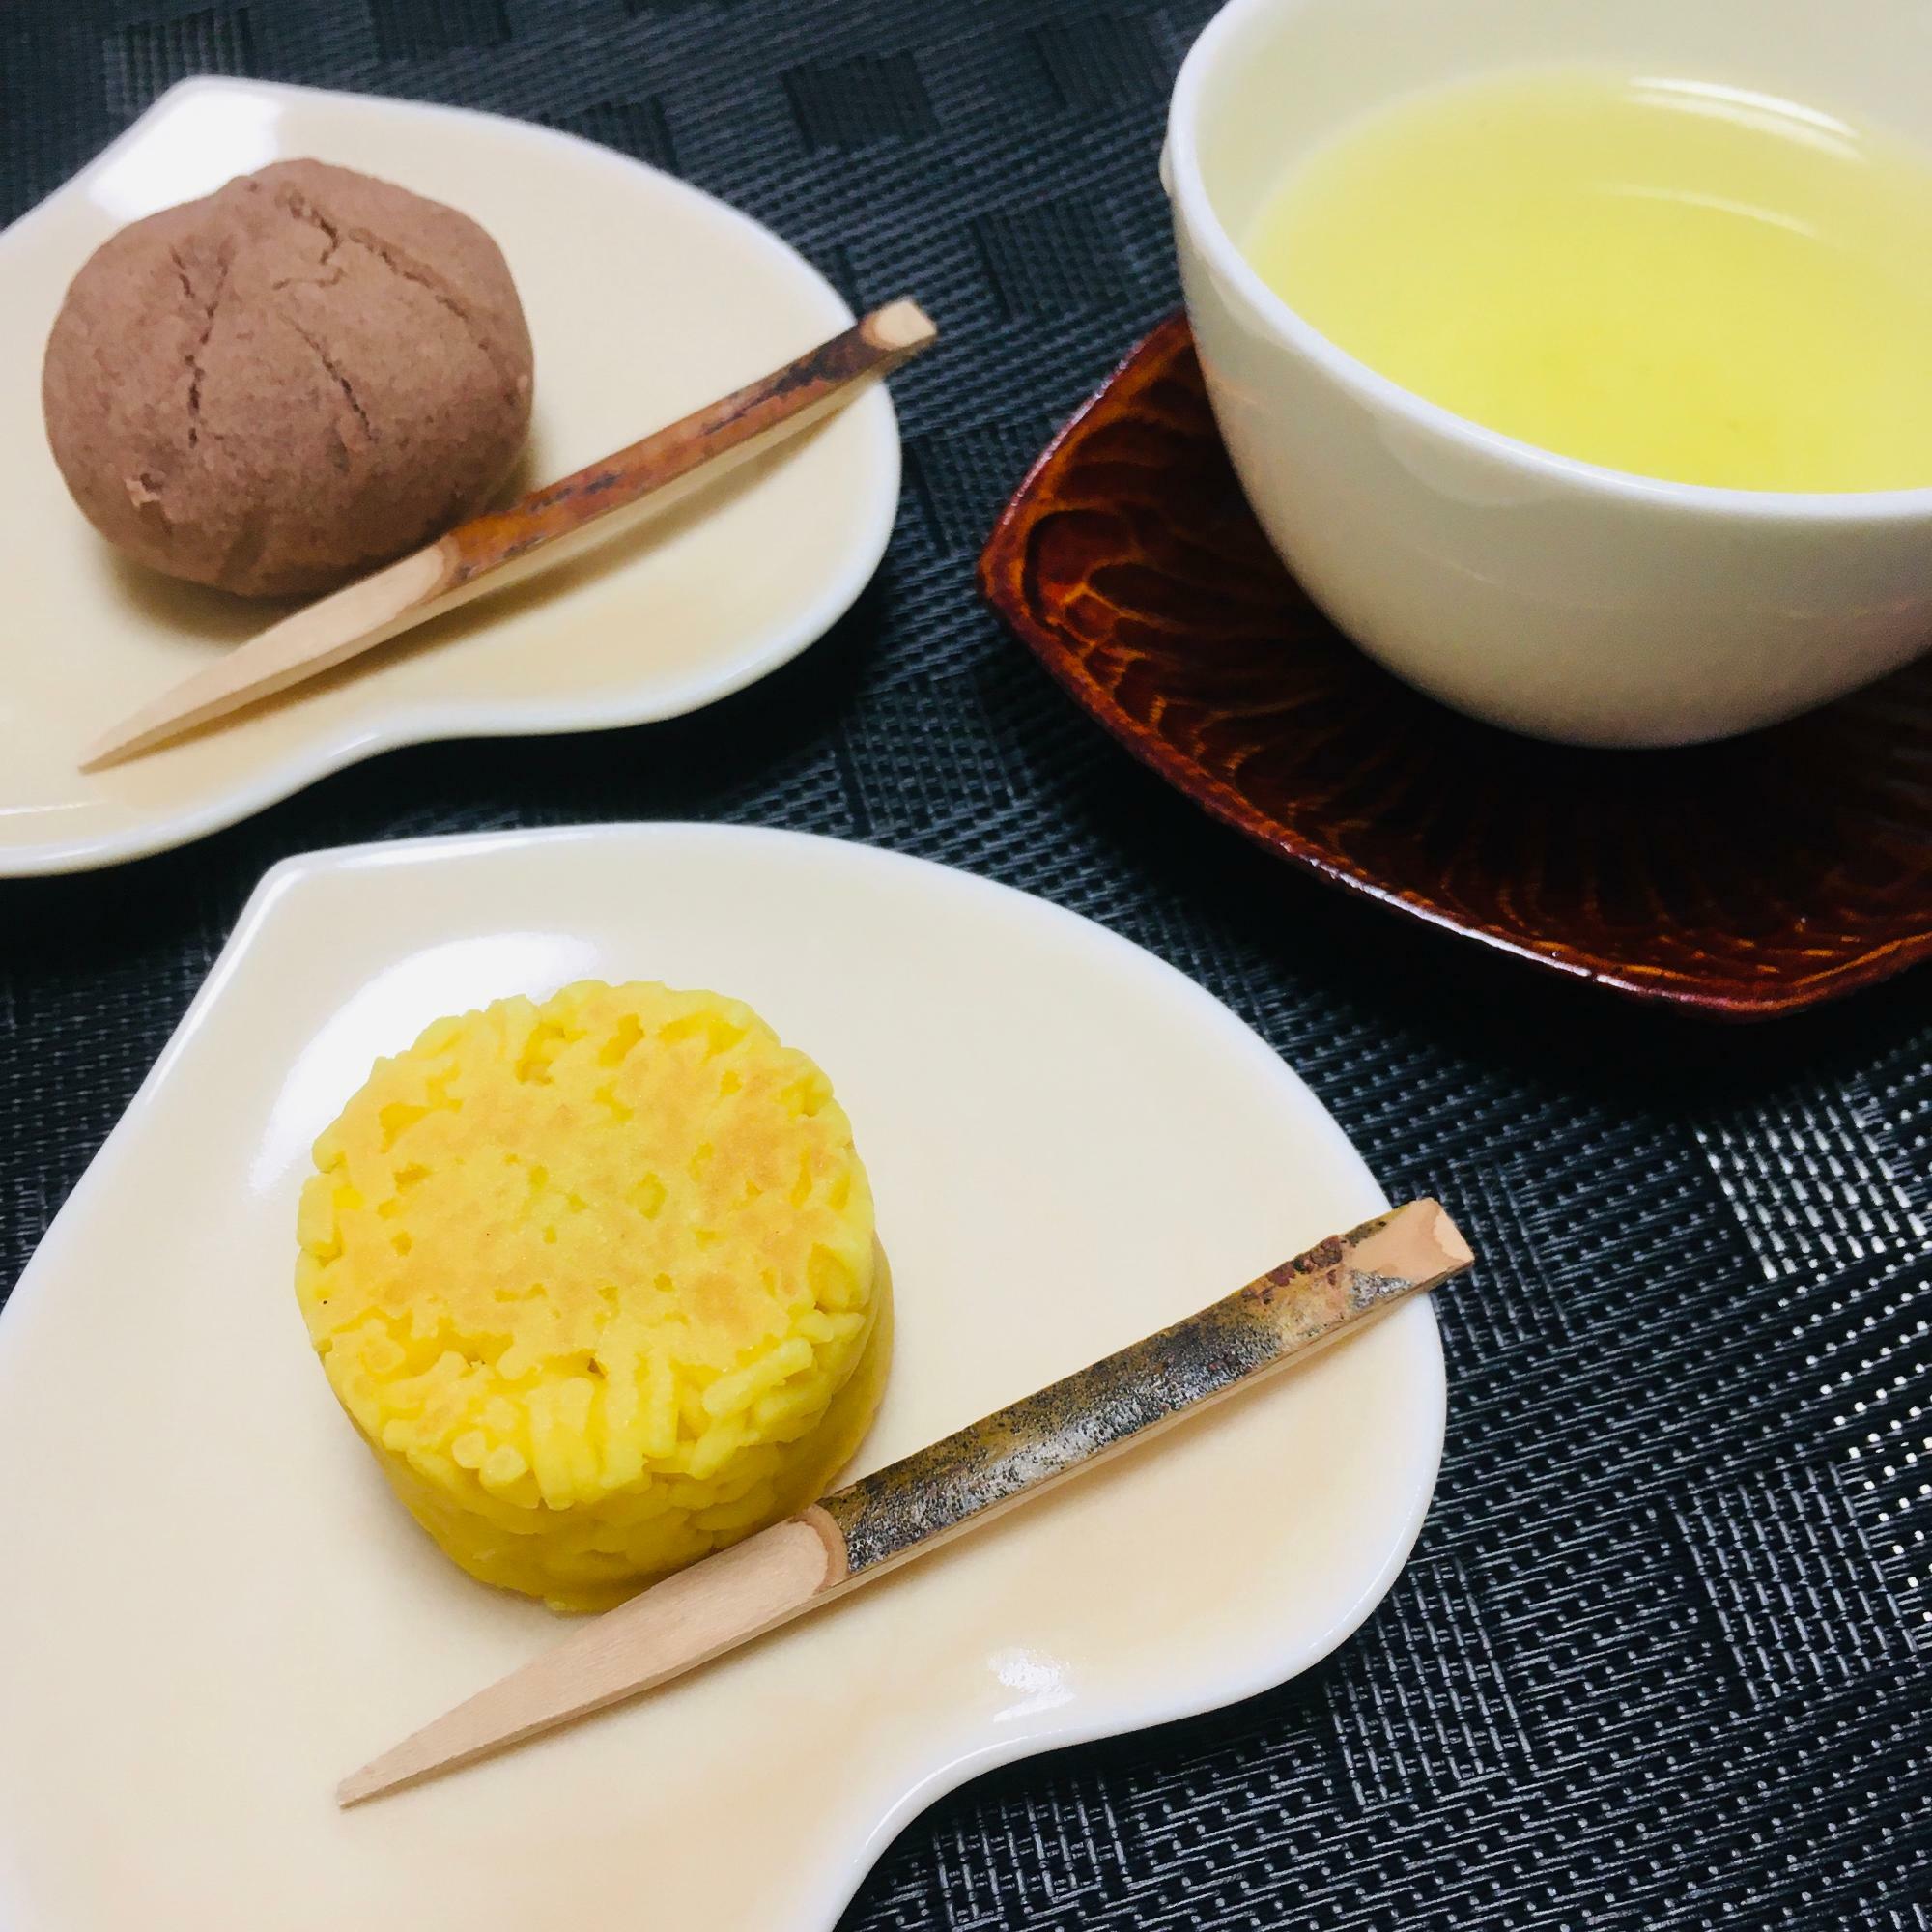 煎茶とともに。どちらも上品でとてもおいしかったです！四季折々の和菓子もぜひ。